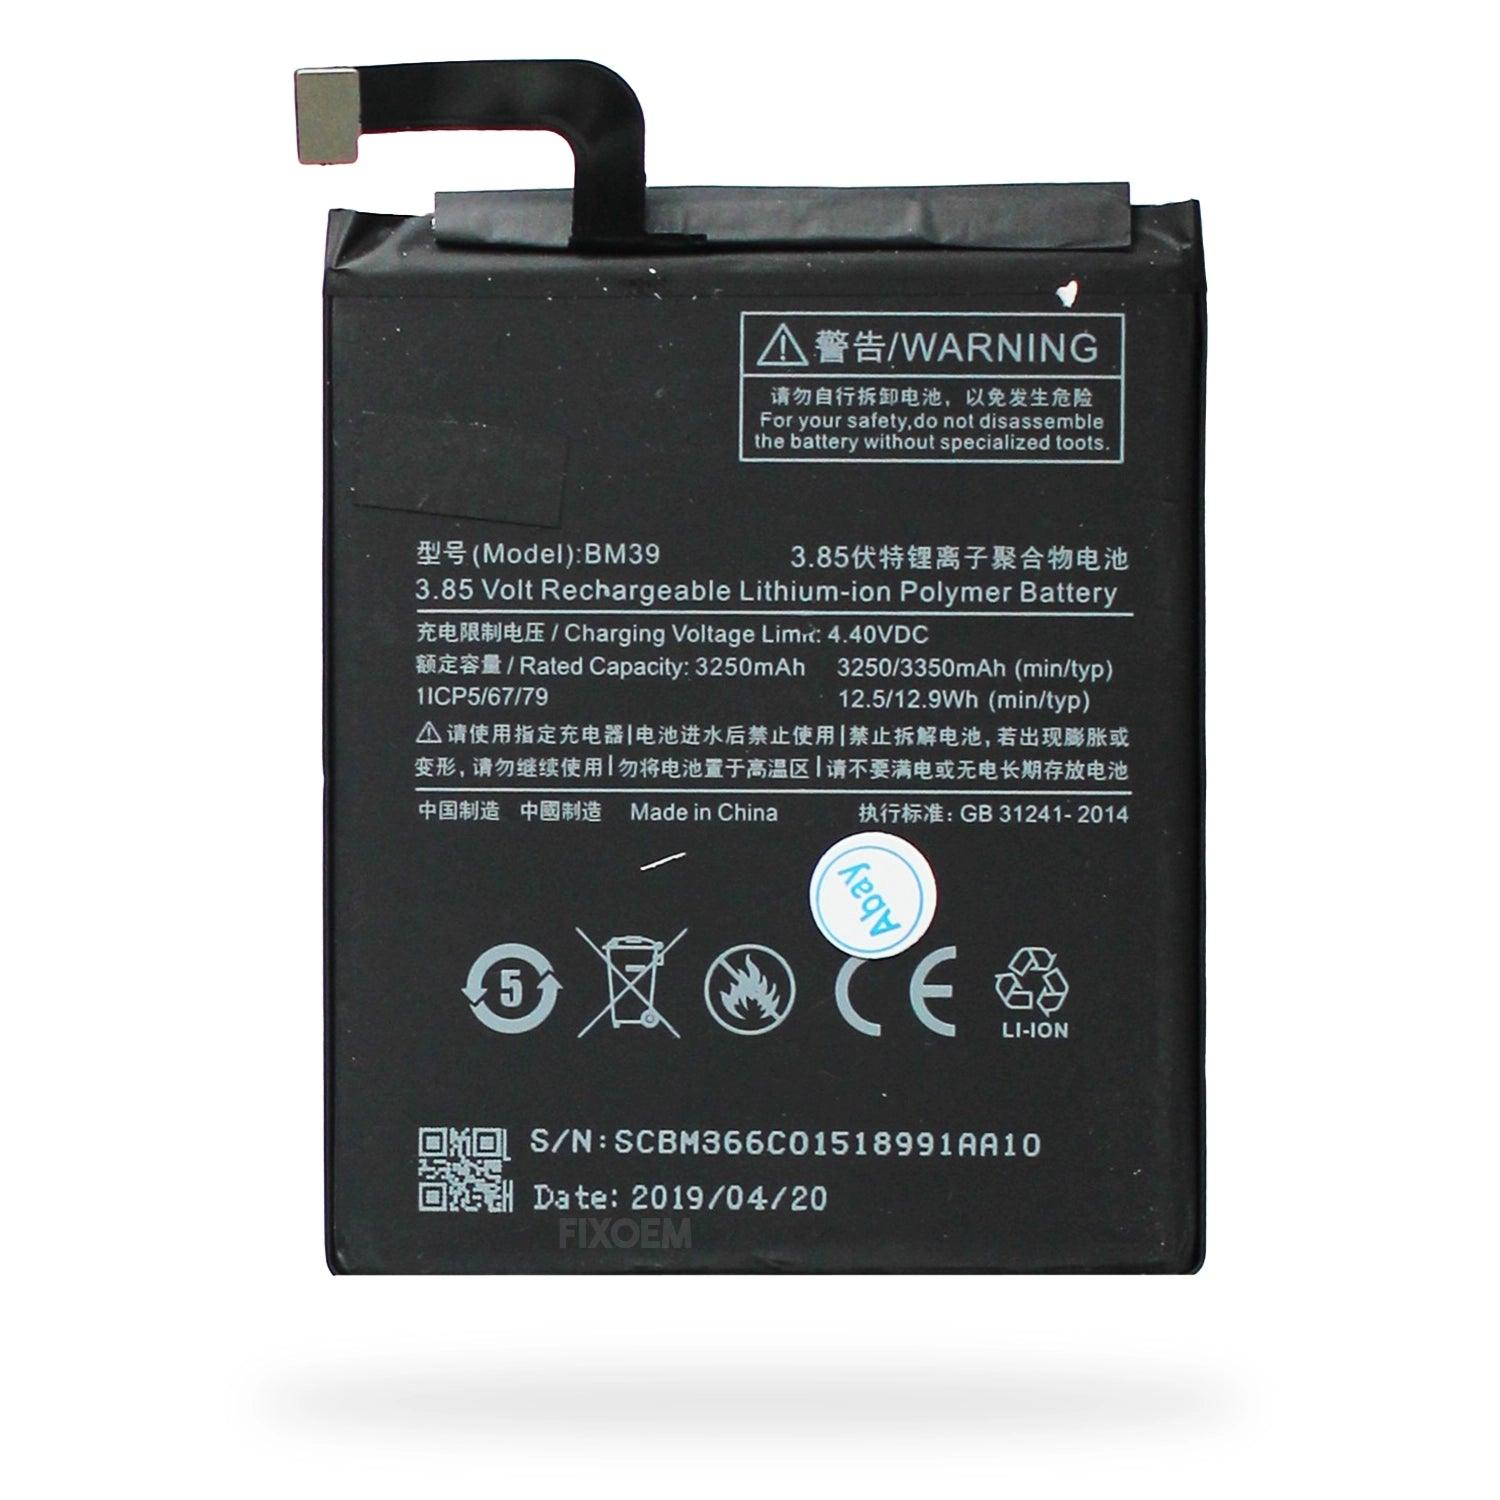 Bateria Xiaomi Mi 6 MCE16 Bm39 a solo $ 230.00 Refaccion y puestos celulares, refurbish y microelectronica.- FixOEM